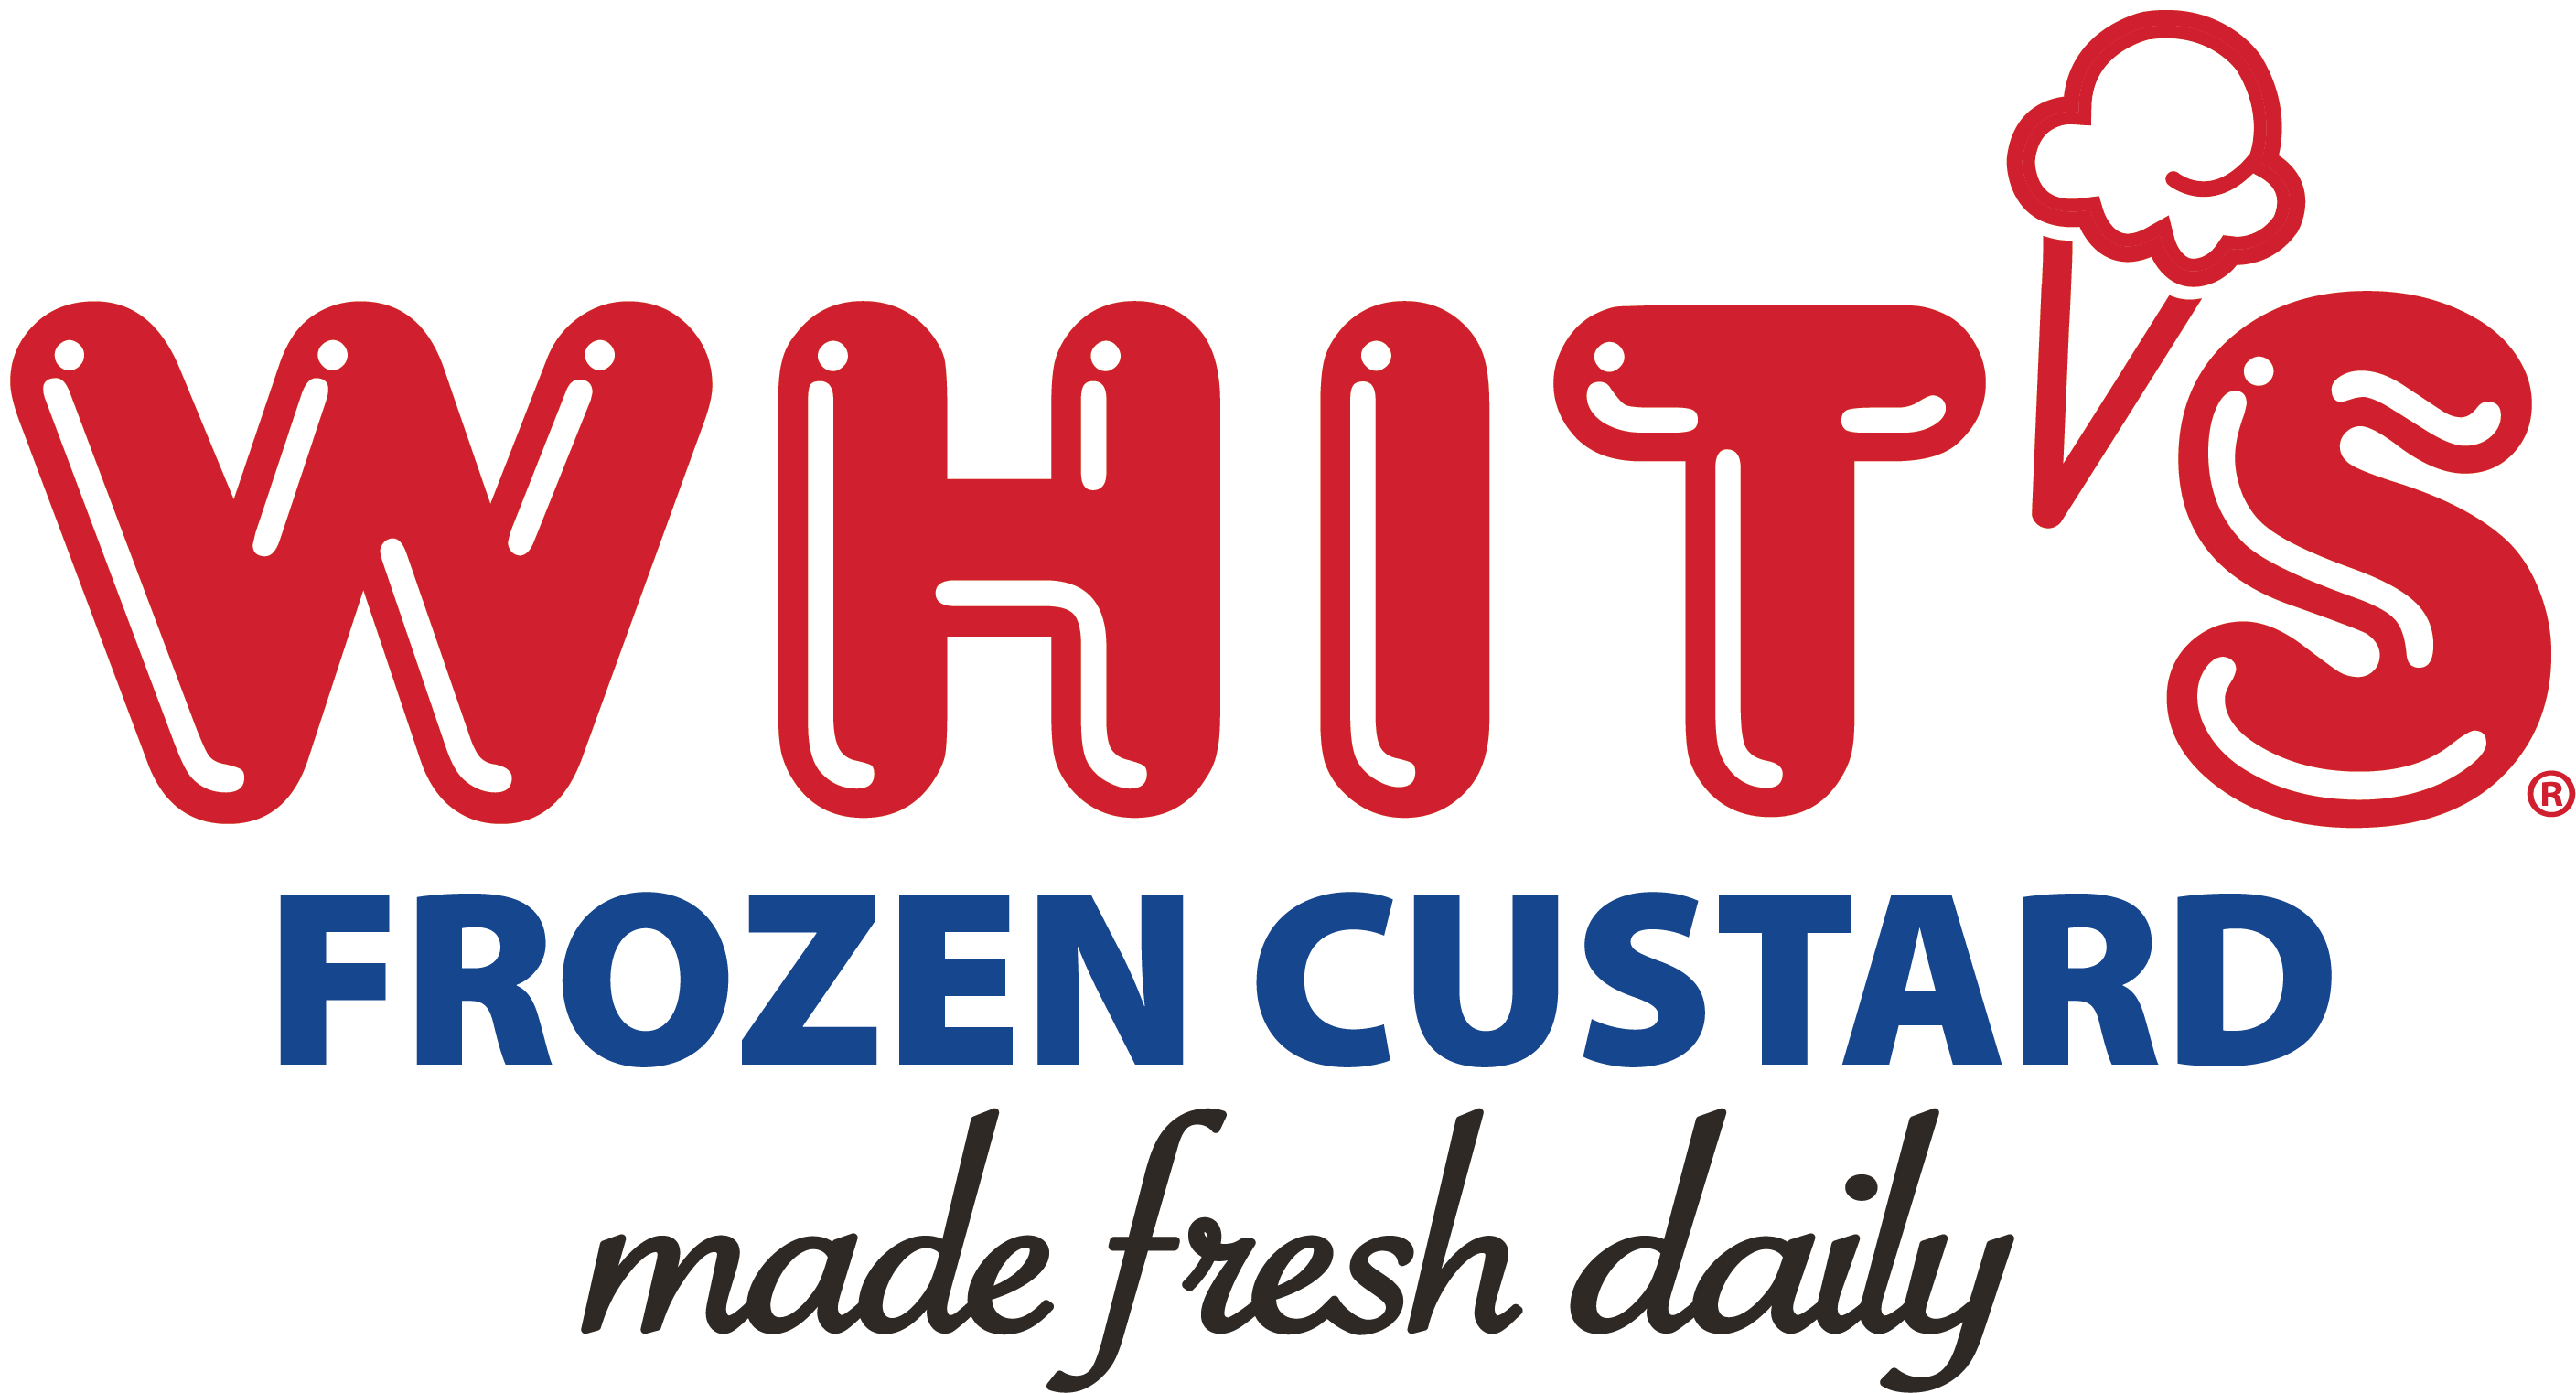 Whit's Frozen Custard of Stuart